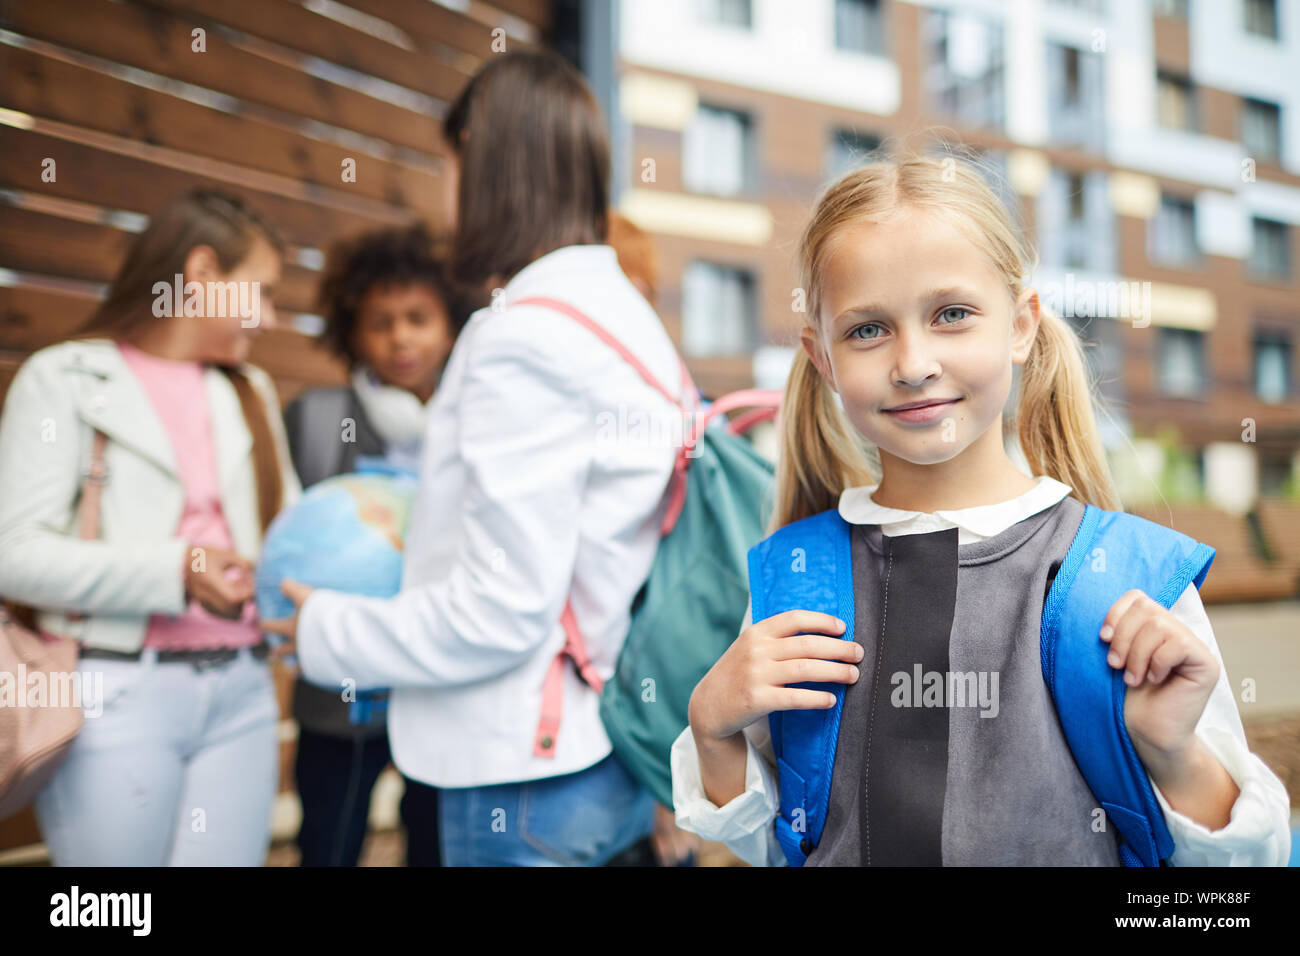 Portrait de petite écolière avec de longs cheveux blonds avec sac à dos derrière son dos smiling at camera avec d'autres enfants de l'école dans le fond pis Banque D'Images